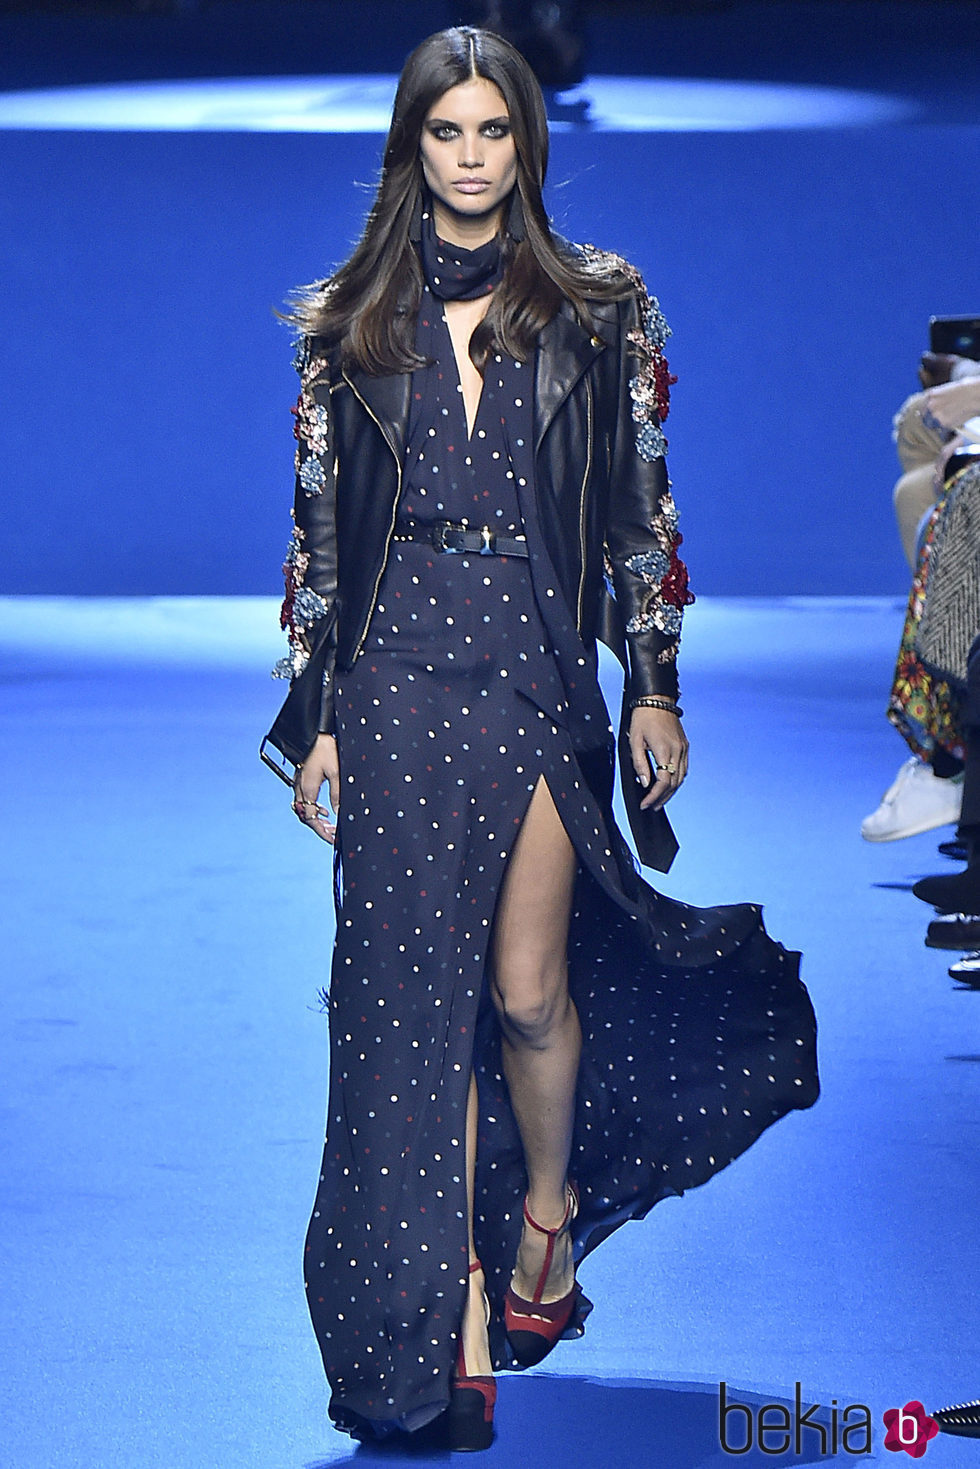 Sara Sampaio desfilando para Elie Saab en la Semana de la Moda de París